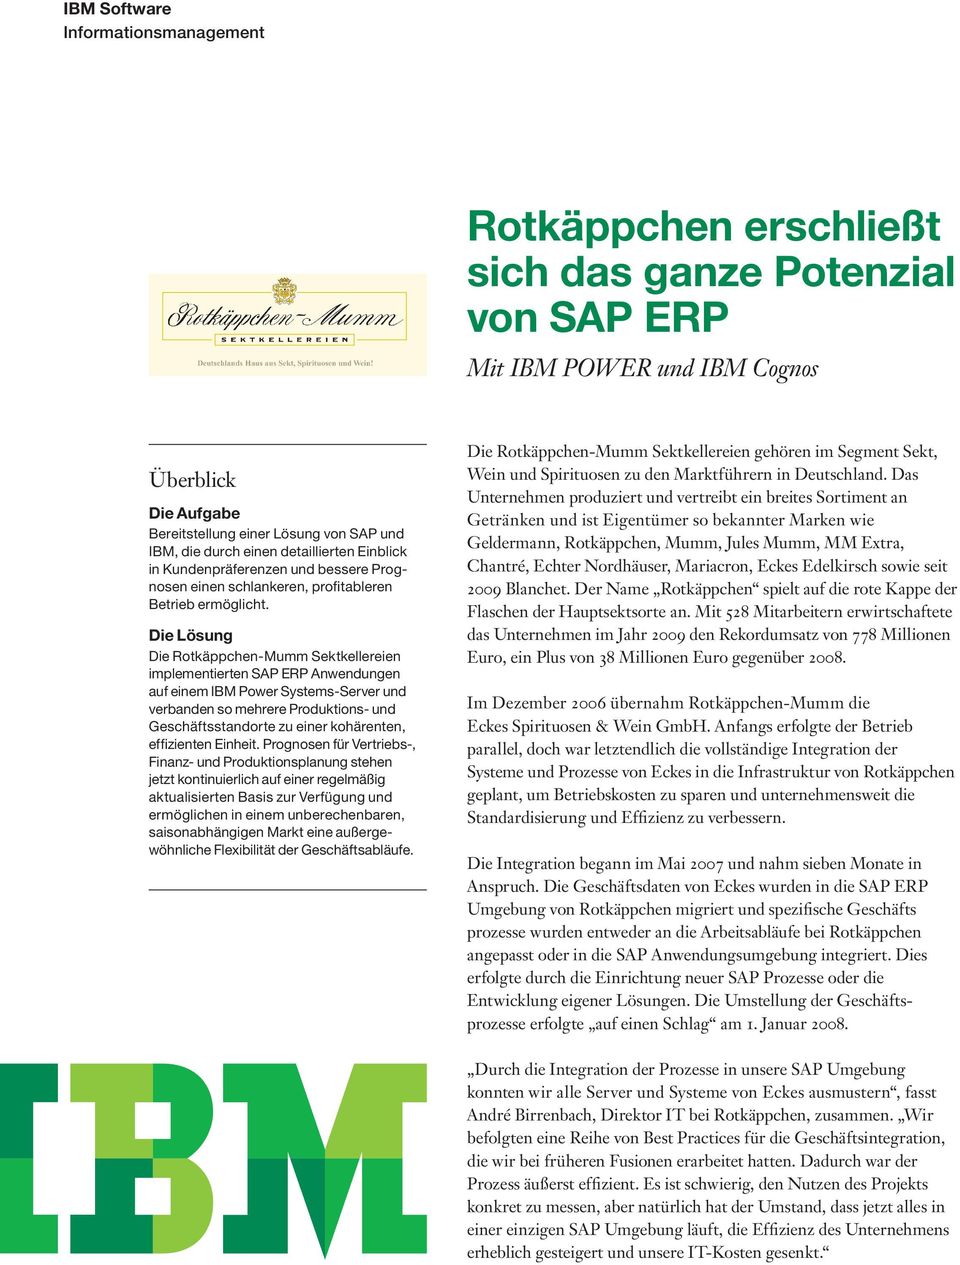 Die Lösung Die Rotkäppchen-Mumm Sektkellereien implementierten SAP ERP Anwendungen auf einem IBM Power Systems-Server und verbanden so mehrere Produktions- und Geschäftsstandorte zu einer kohärenten,